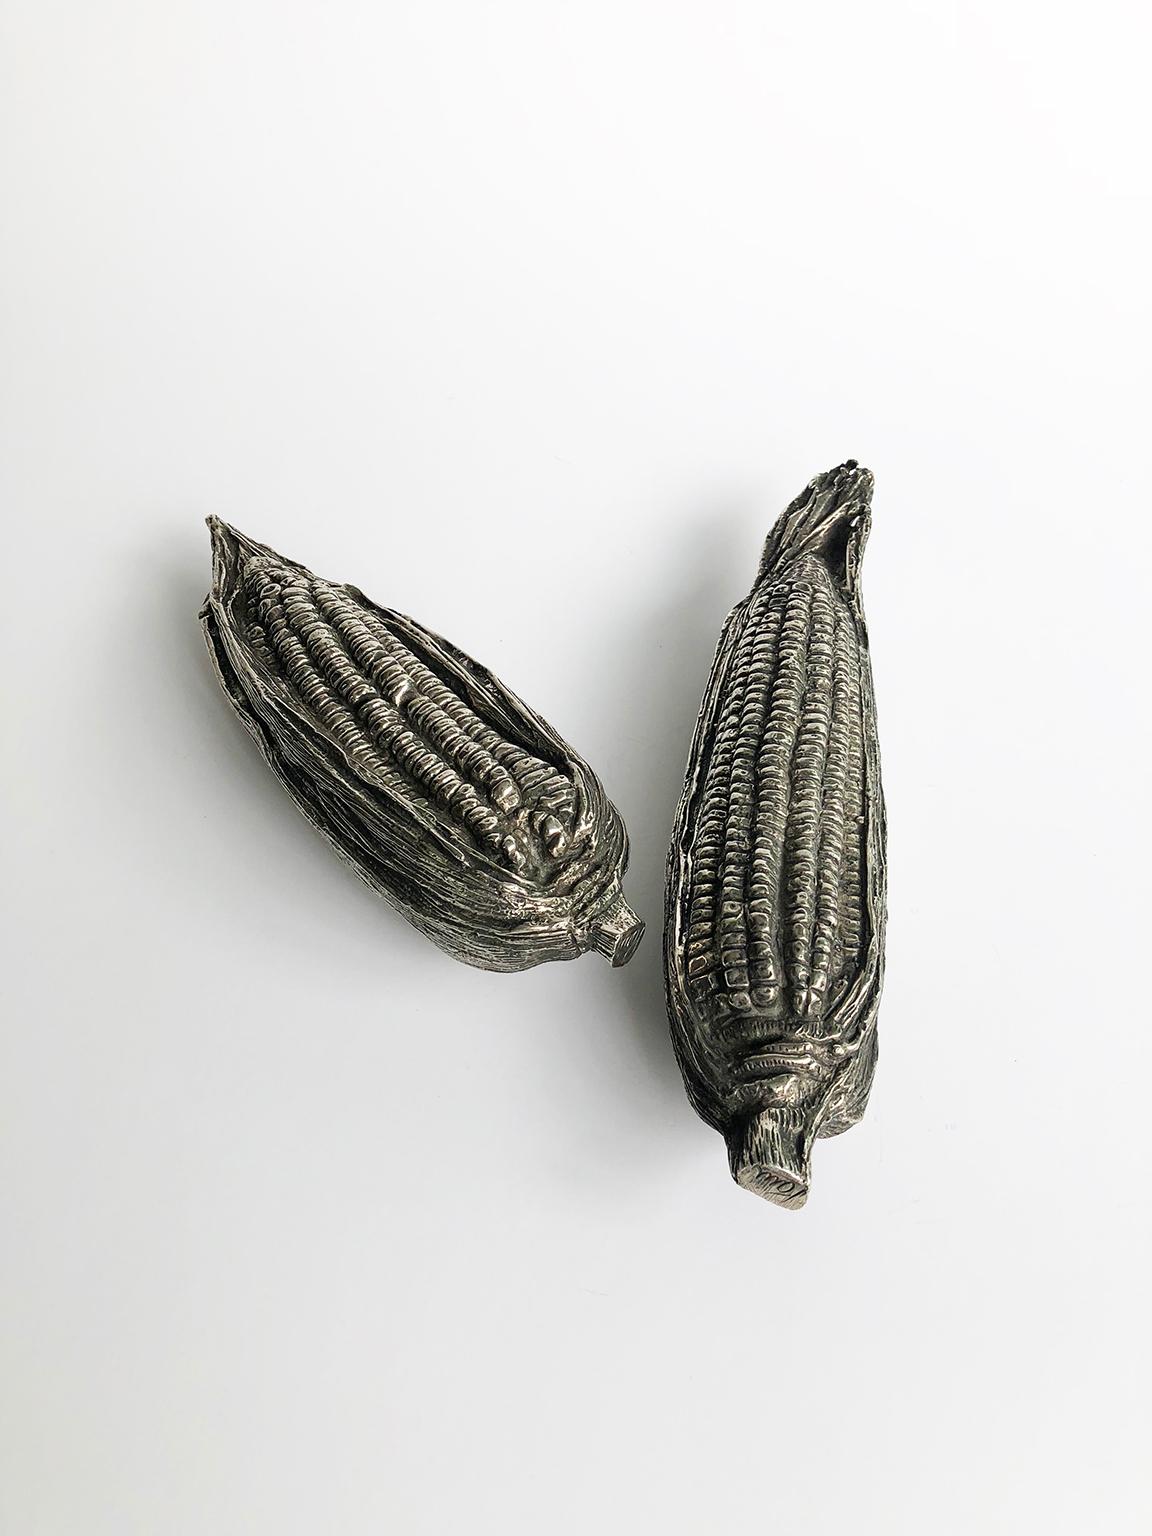 Pair of Corn Sculptures by Aruro Pani (Mitte des 20. Jahrhunderts)